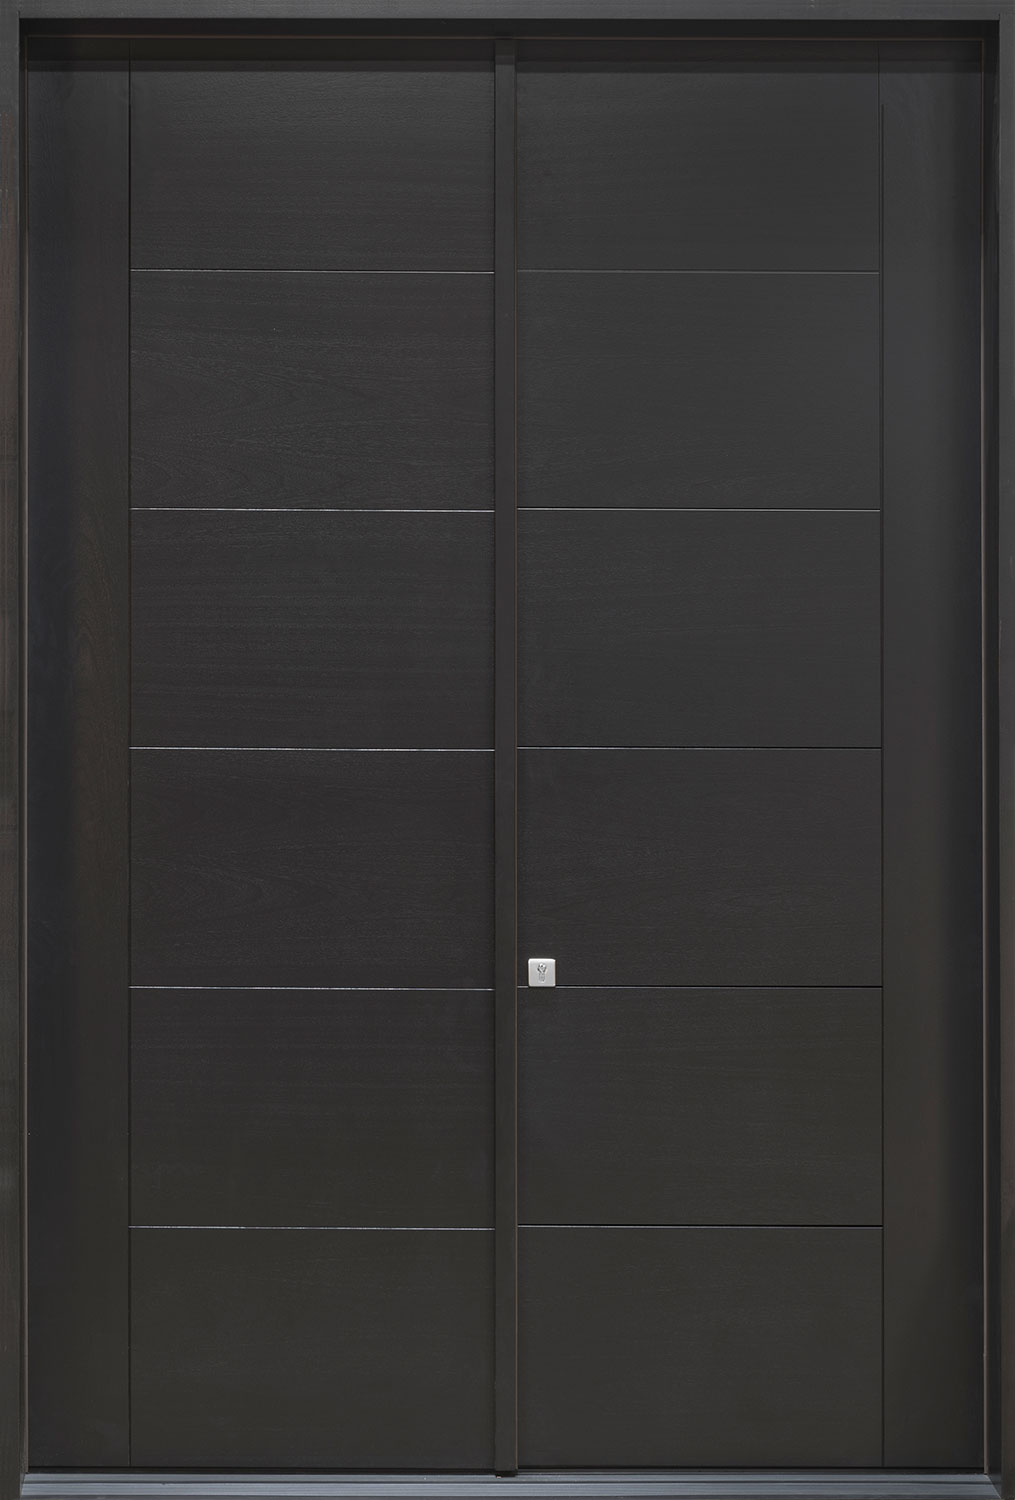 Mahogany Veneer Solid Wood Front Entry Door - Double